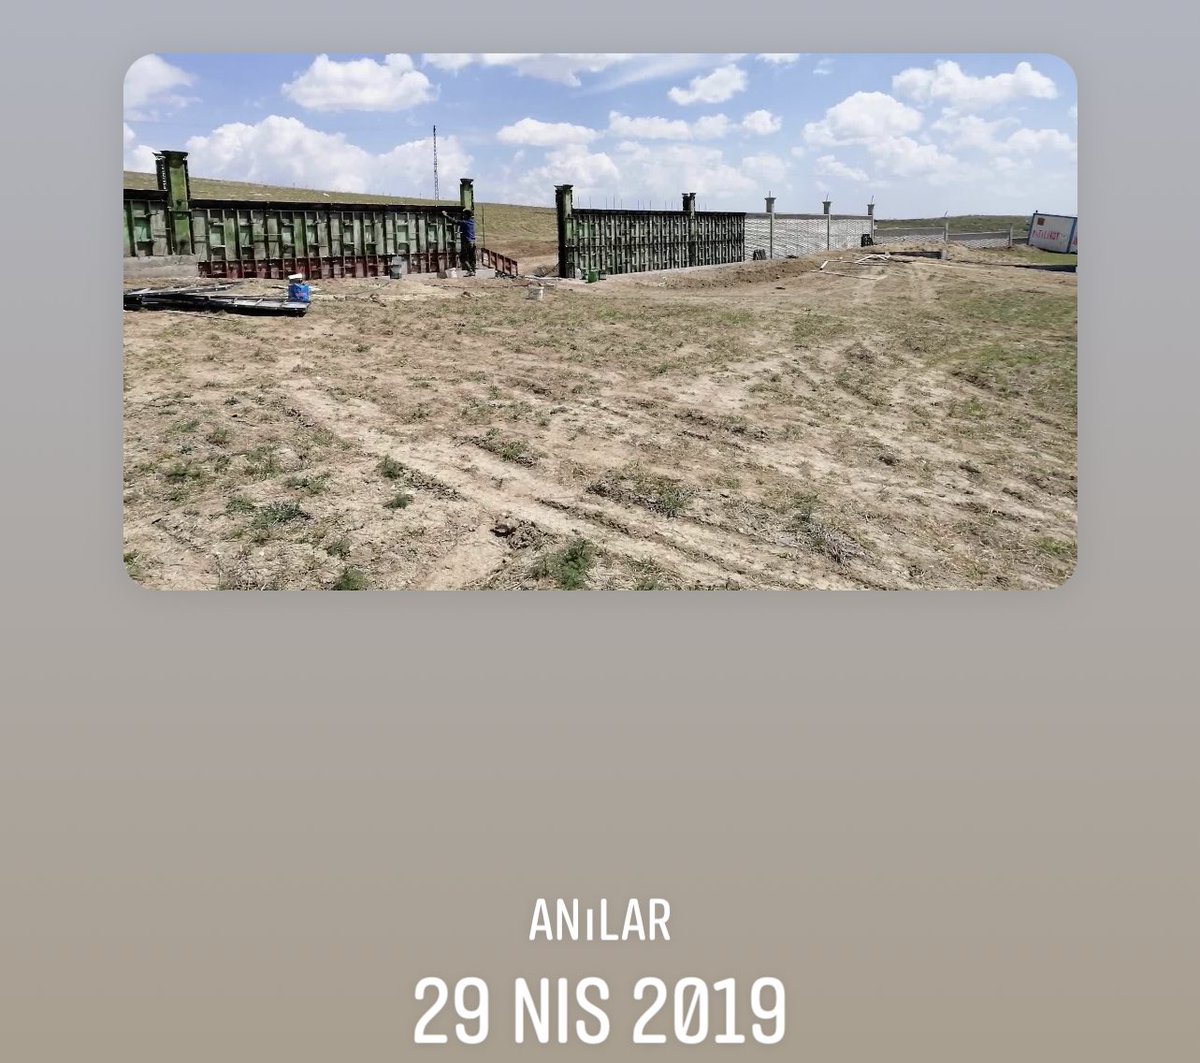 2019 da patiliköy giriş kapısı.. şimdiki halini gelip görenler burada mı ..